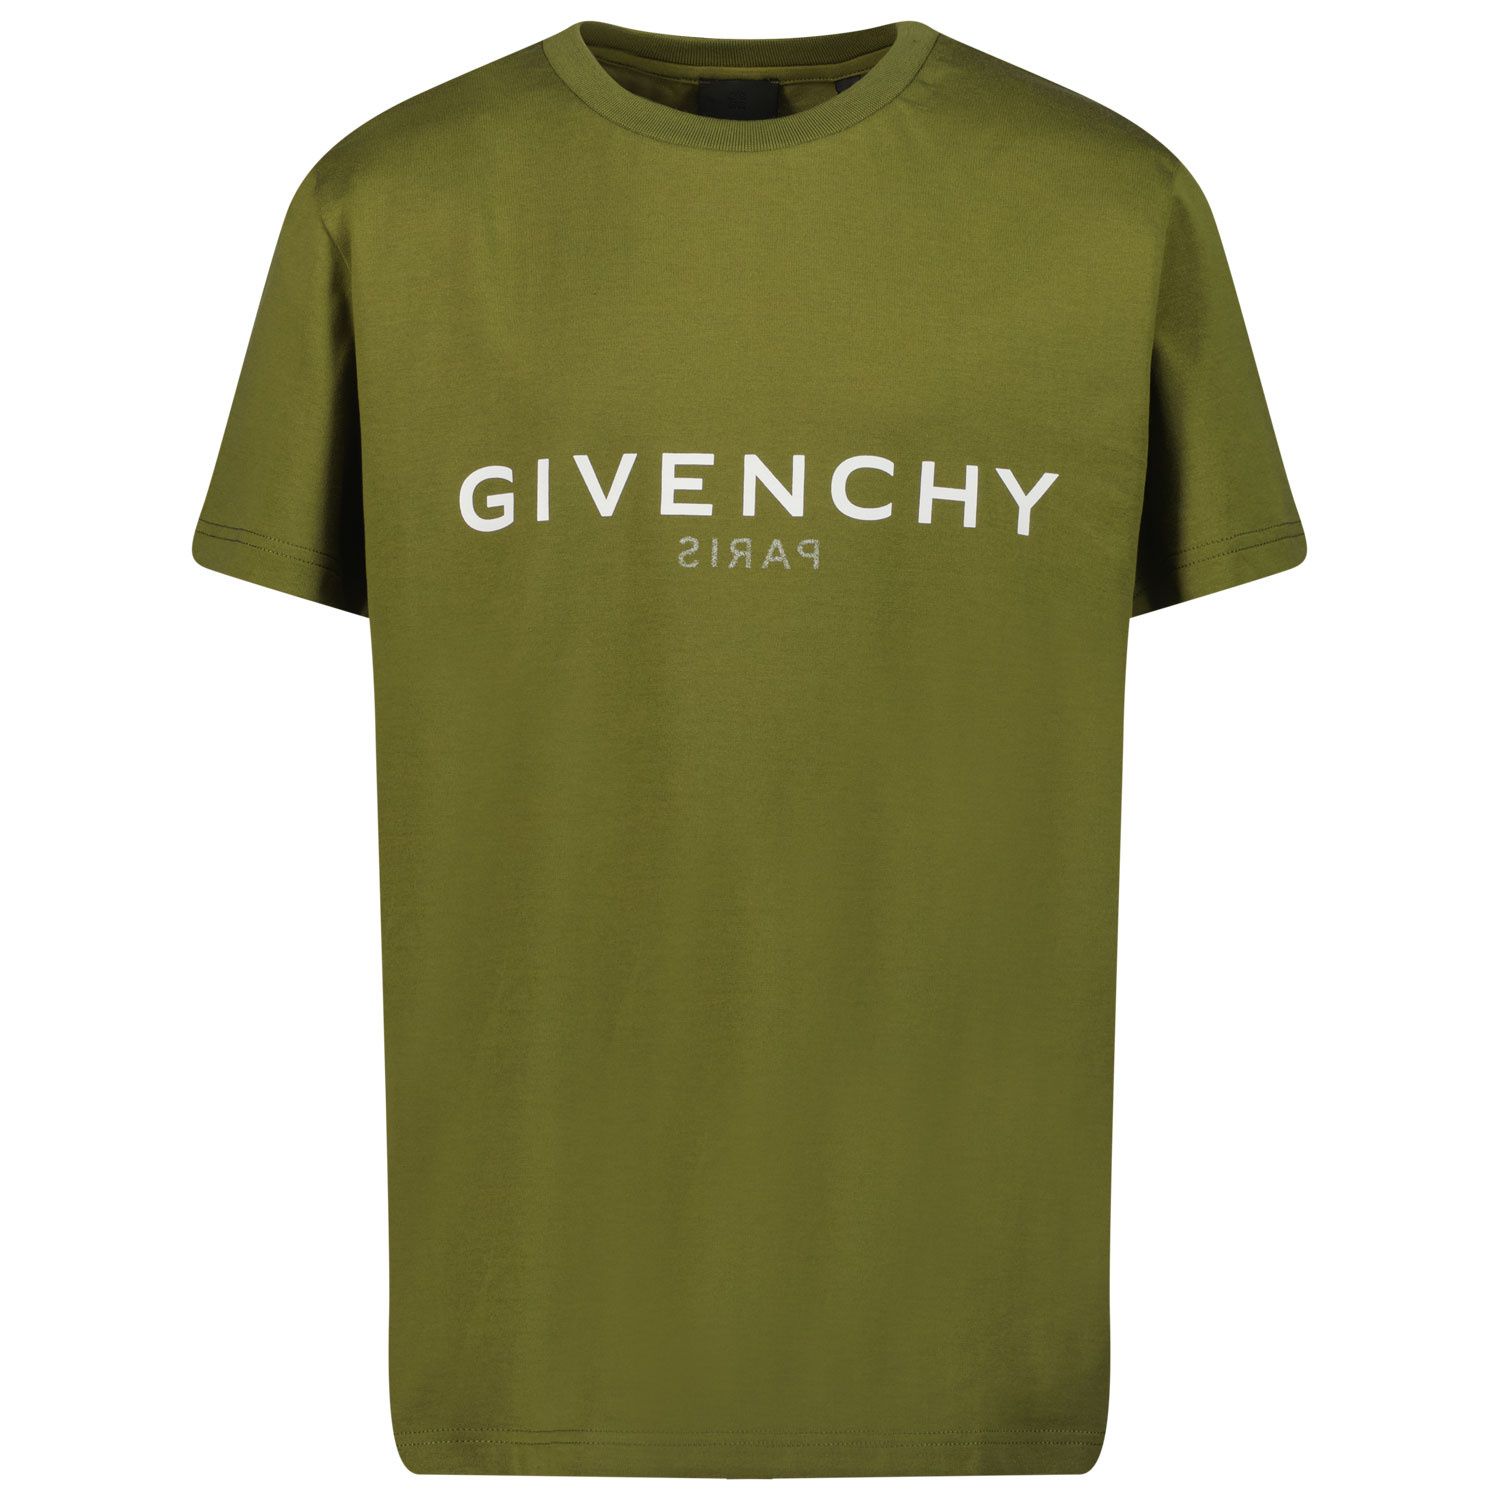 Bild von Givenchy H25324 Kindershirt Camouflage